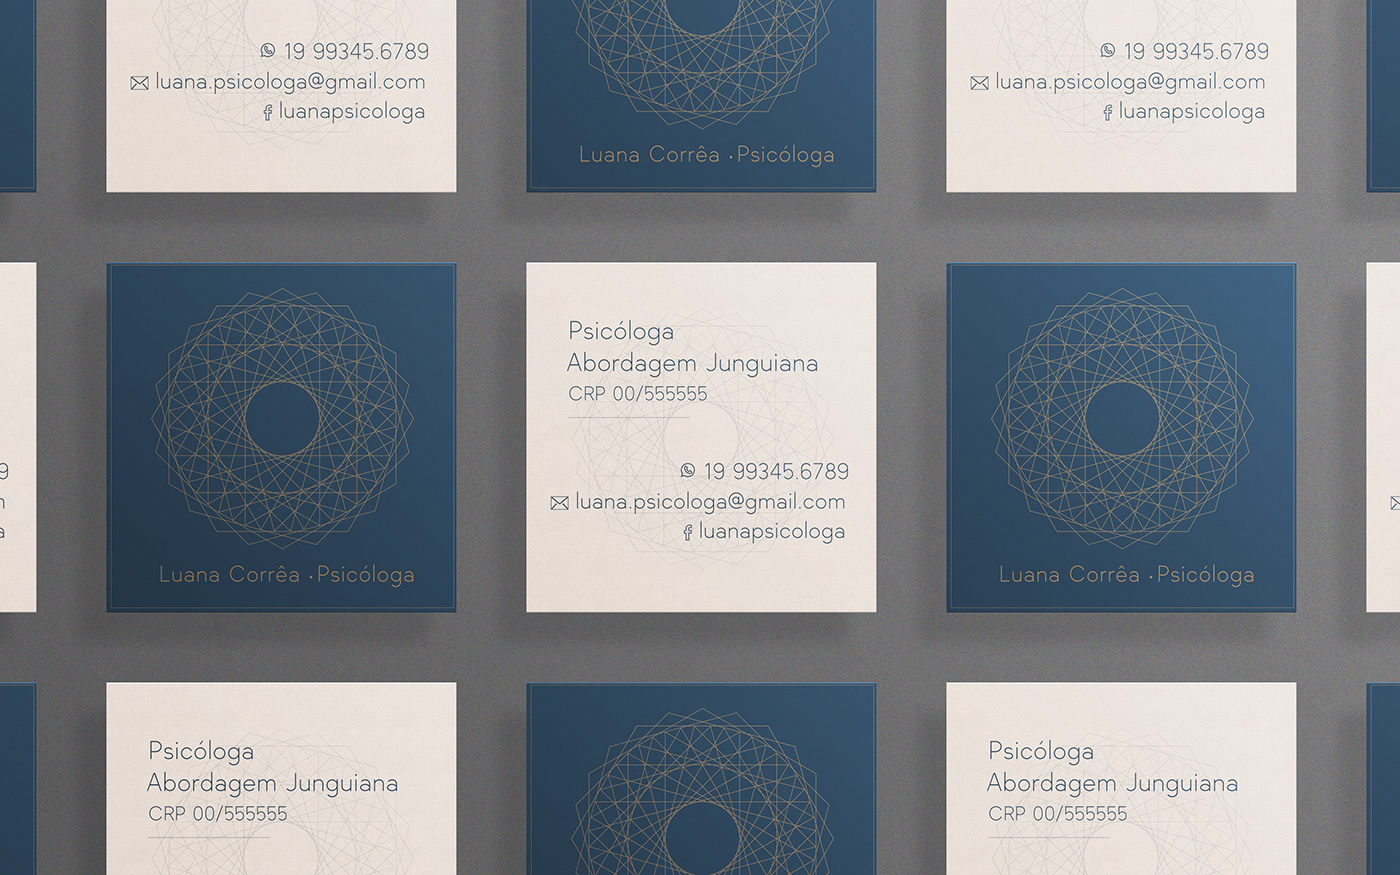 Cartão de Visita Psicóloga Bussines card psychologist design gráfico graphic design 